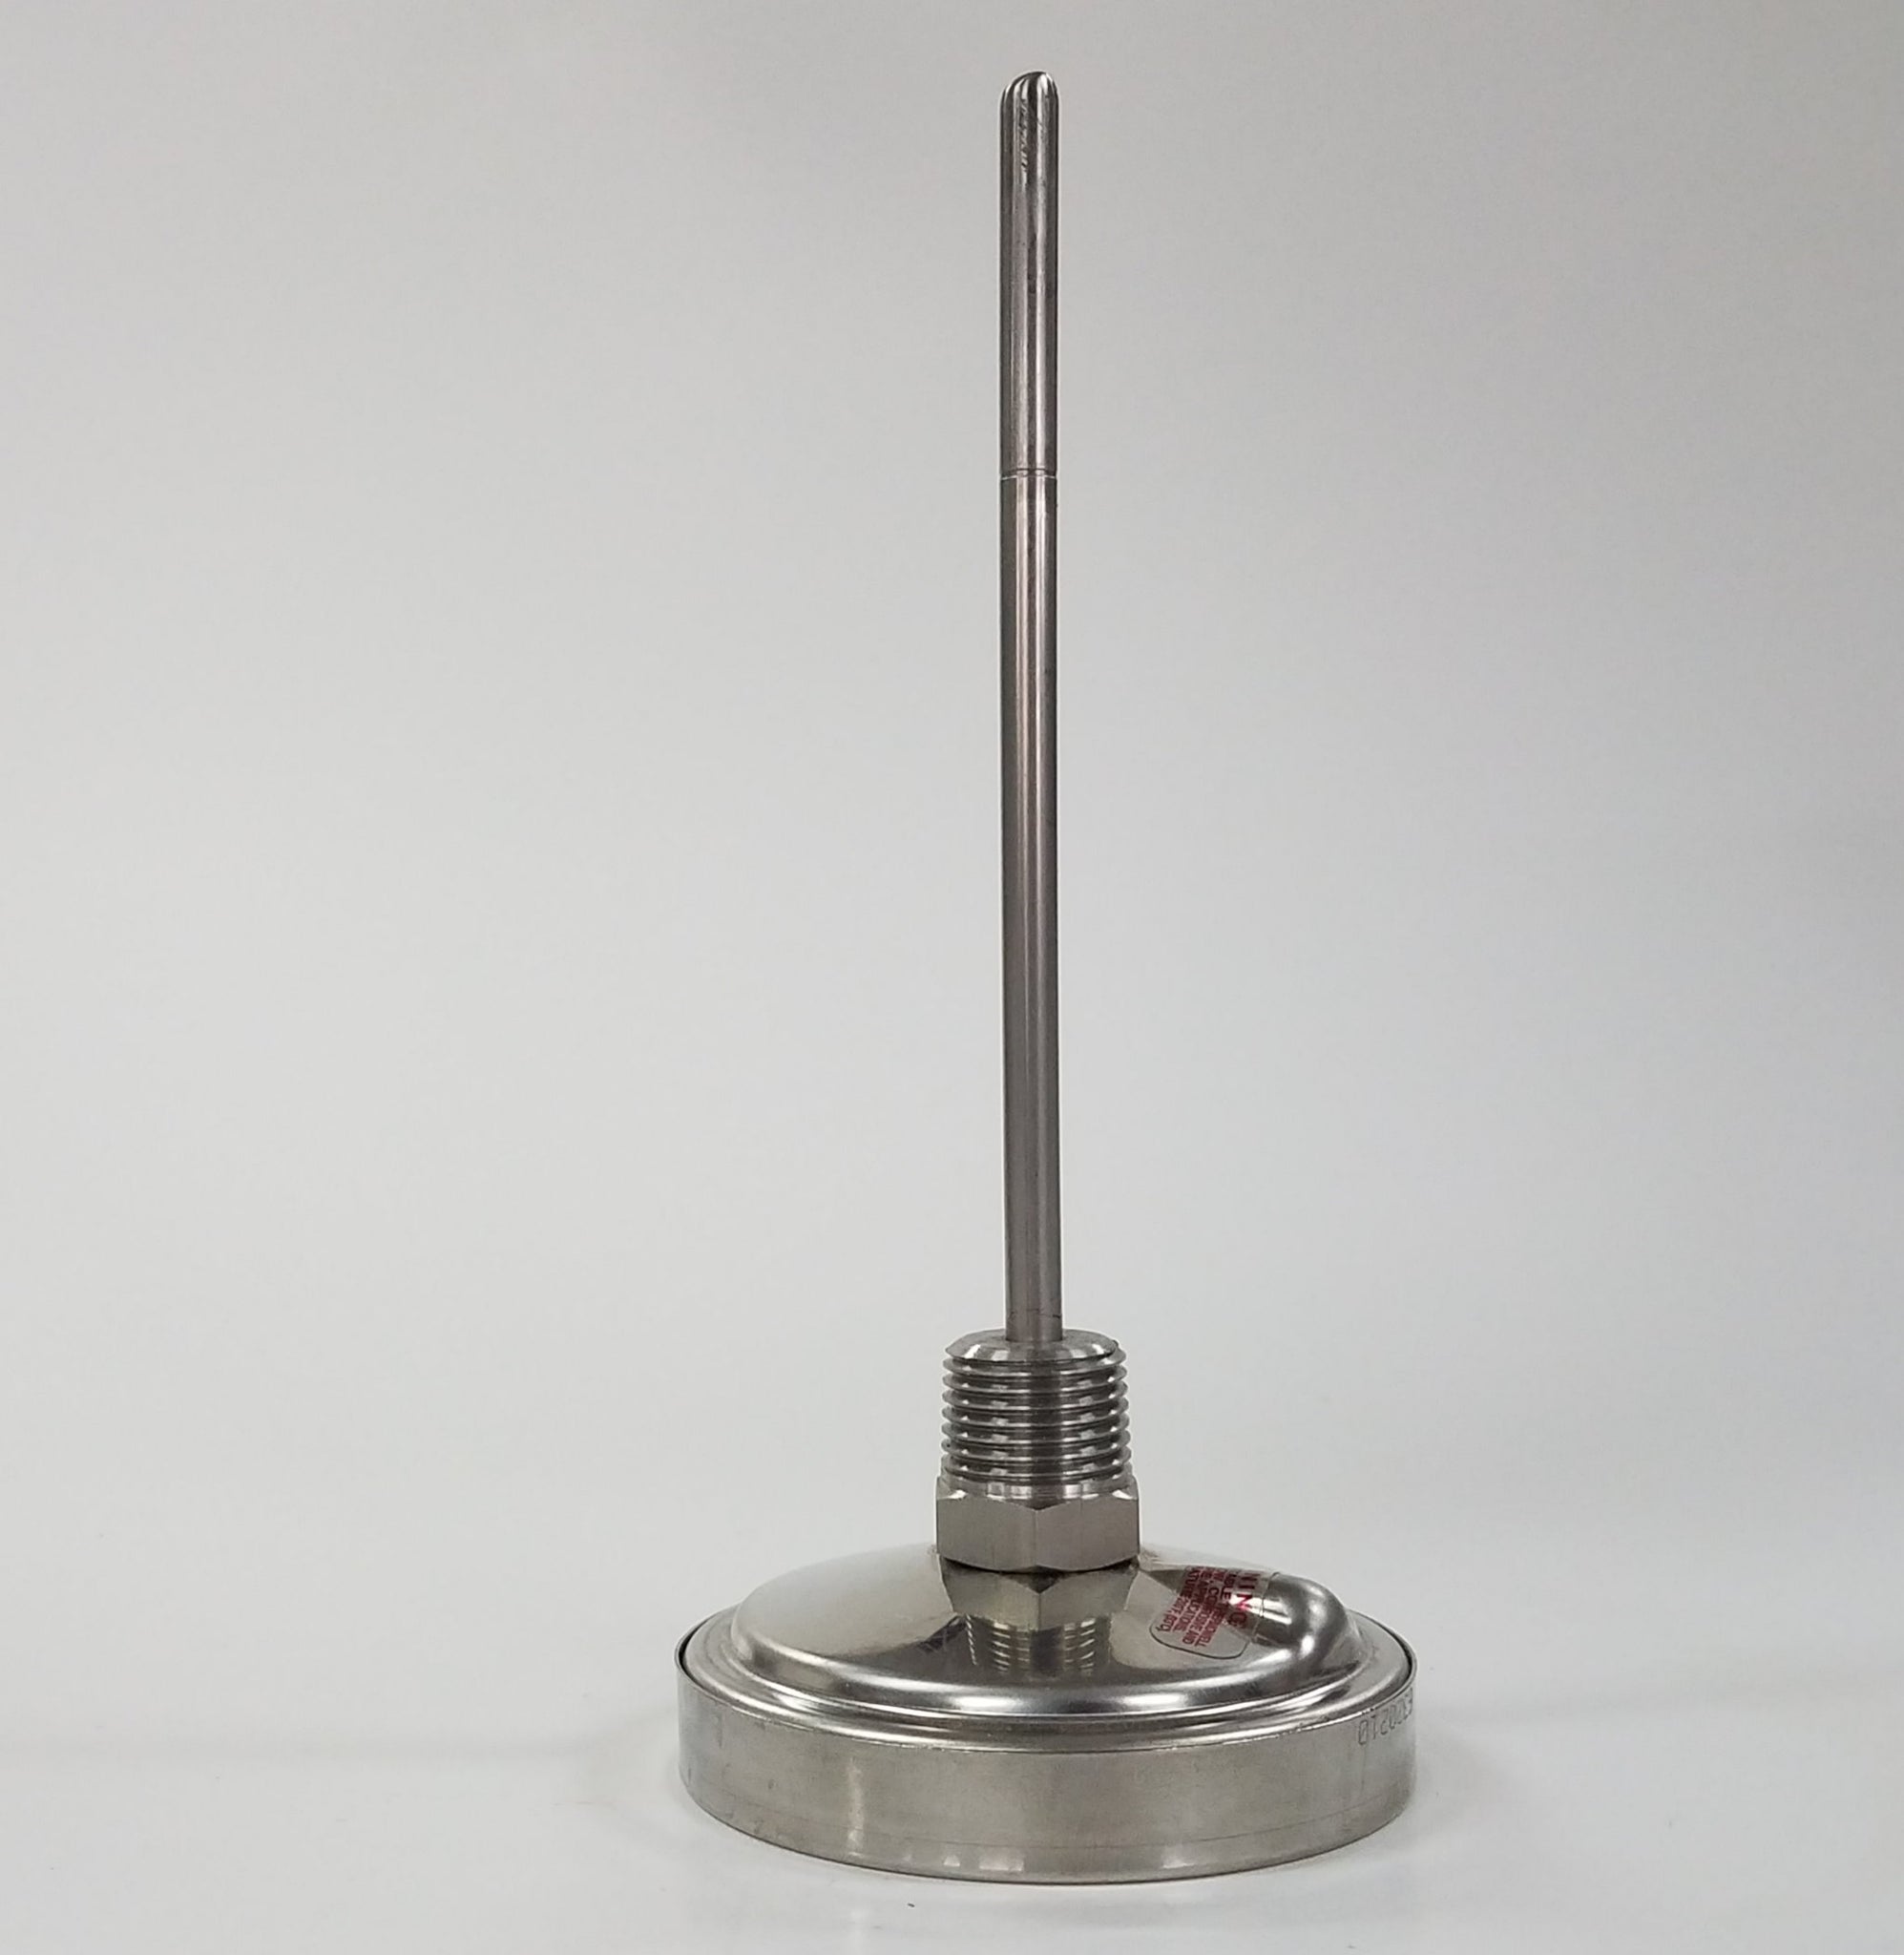 Tel-Tru 5 Thermometer with Glow Dial BQ500 – Sweet Swine O' Mine